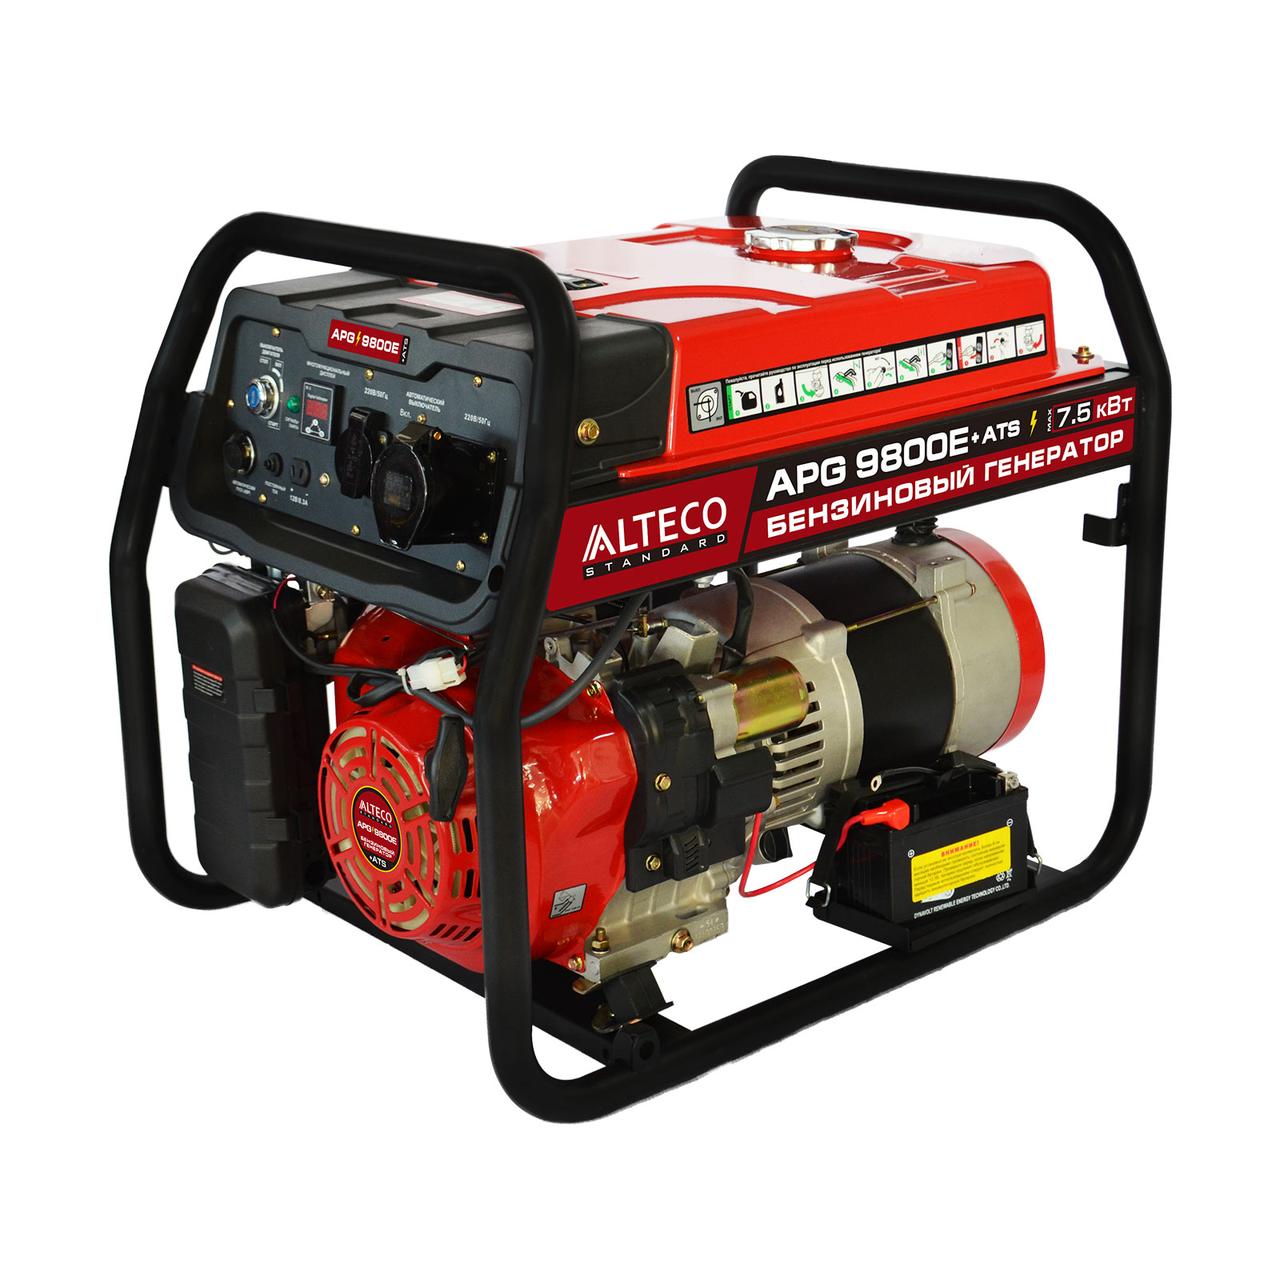 Бензиновый генератор ALTECO APG 9800 E + ATS (N)